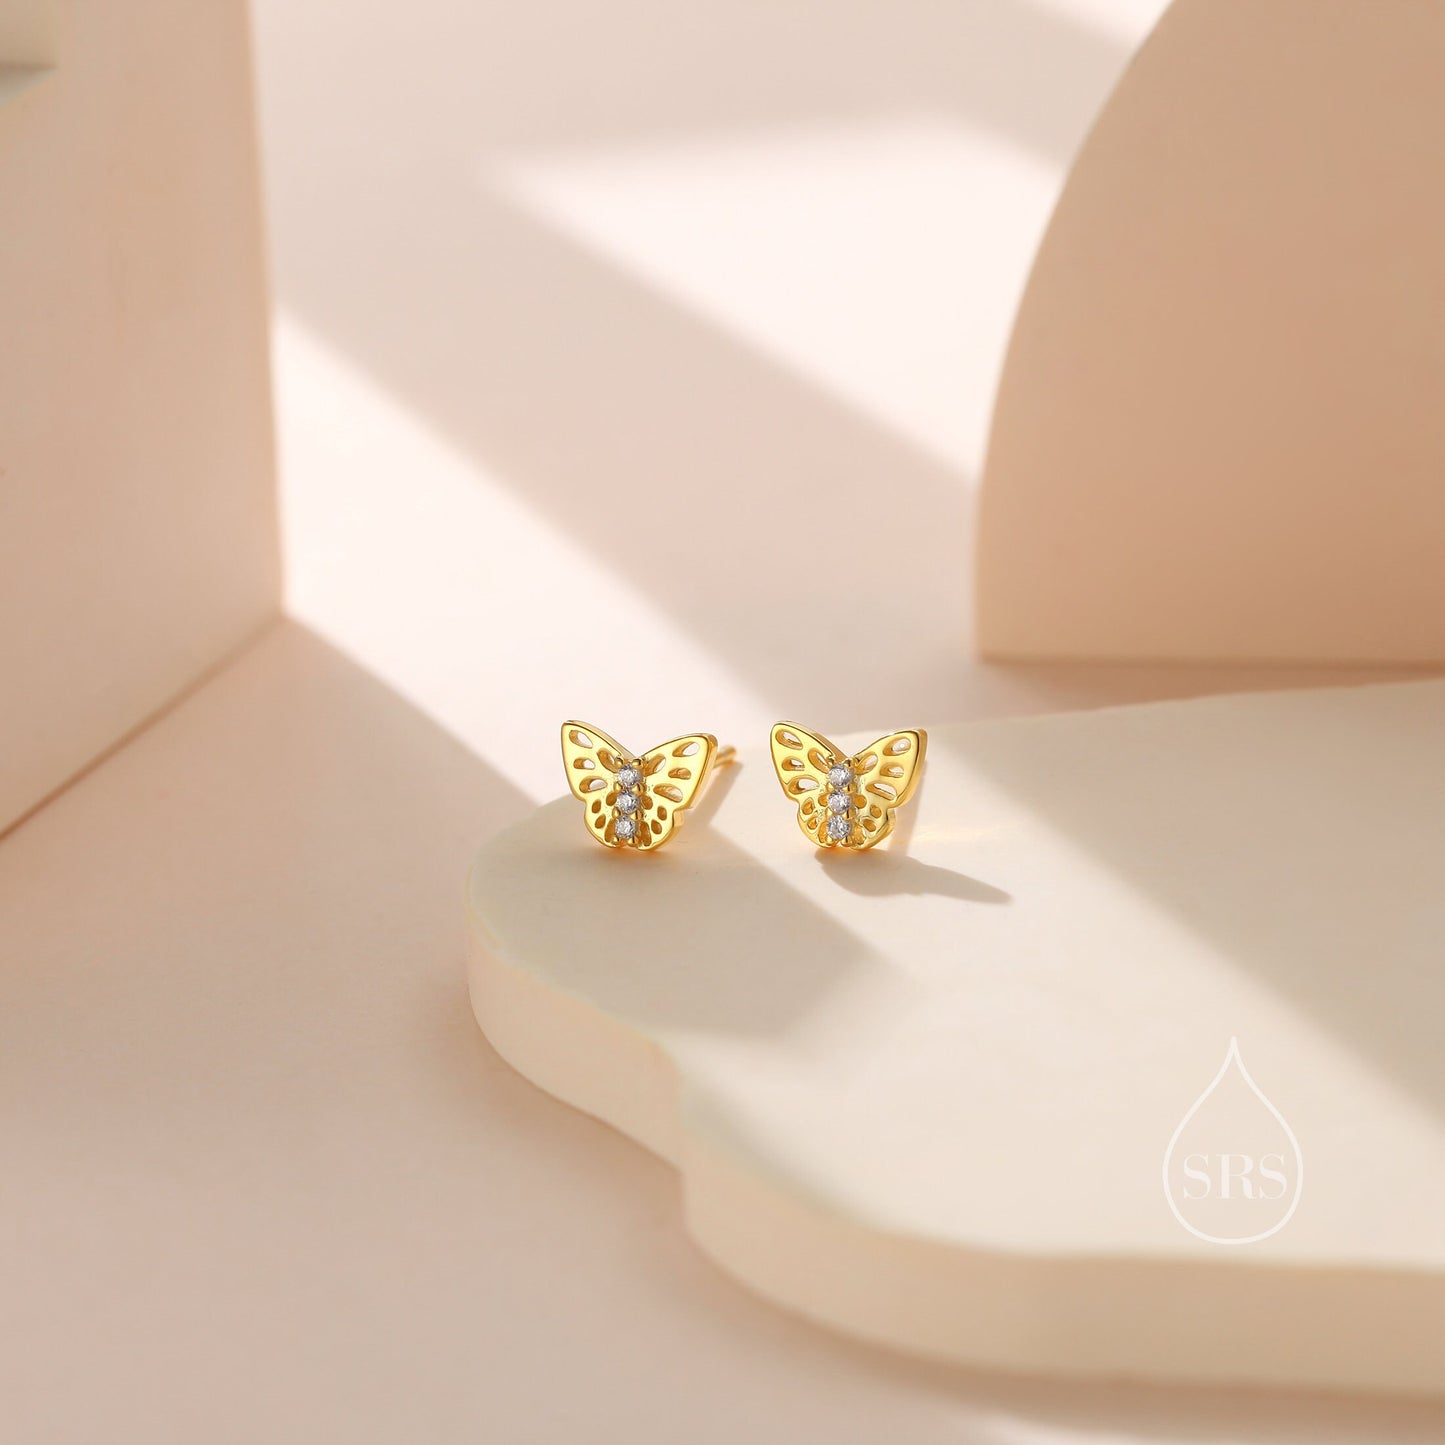 Tiny Butterfly Stud Earrings in Sterling Silver, Silver, Gold or Rose Gold, Butterfly Earrings, Animal Earrings, Small Butterfly Earrings